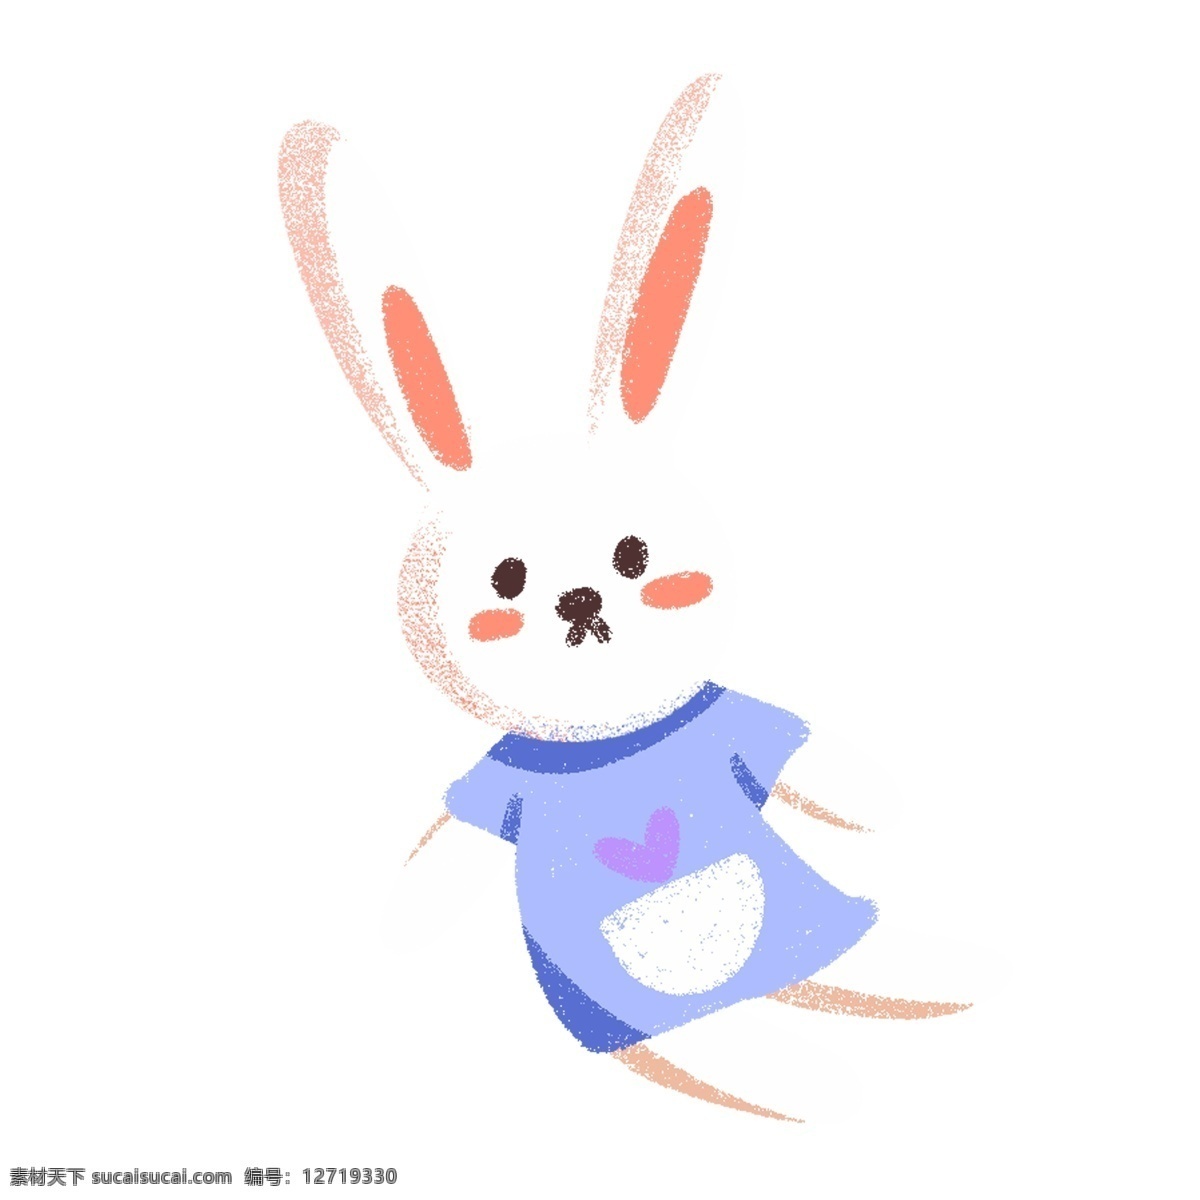 蓝色 衣服 可爱 小 兔子 玩偶 绘画 插画元素 设计元素 卡通 彩色 简约 小清新 精致